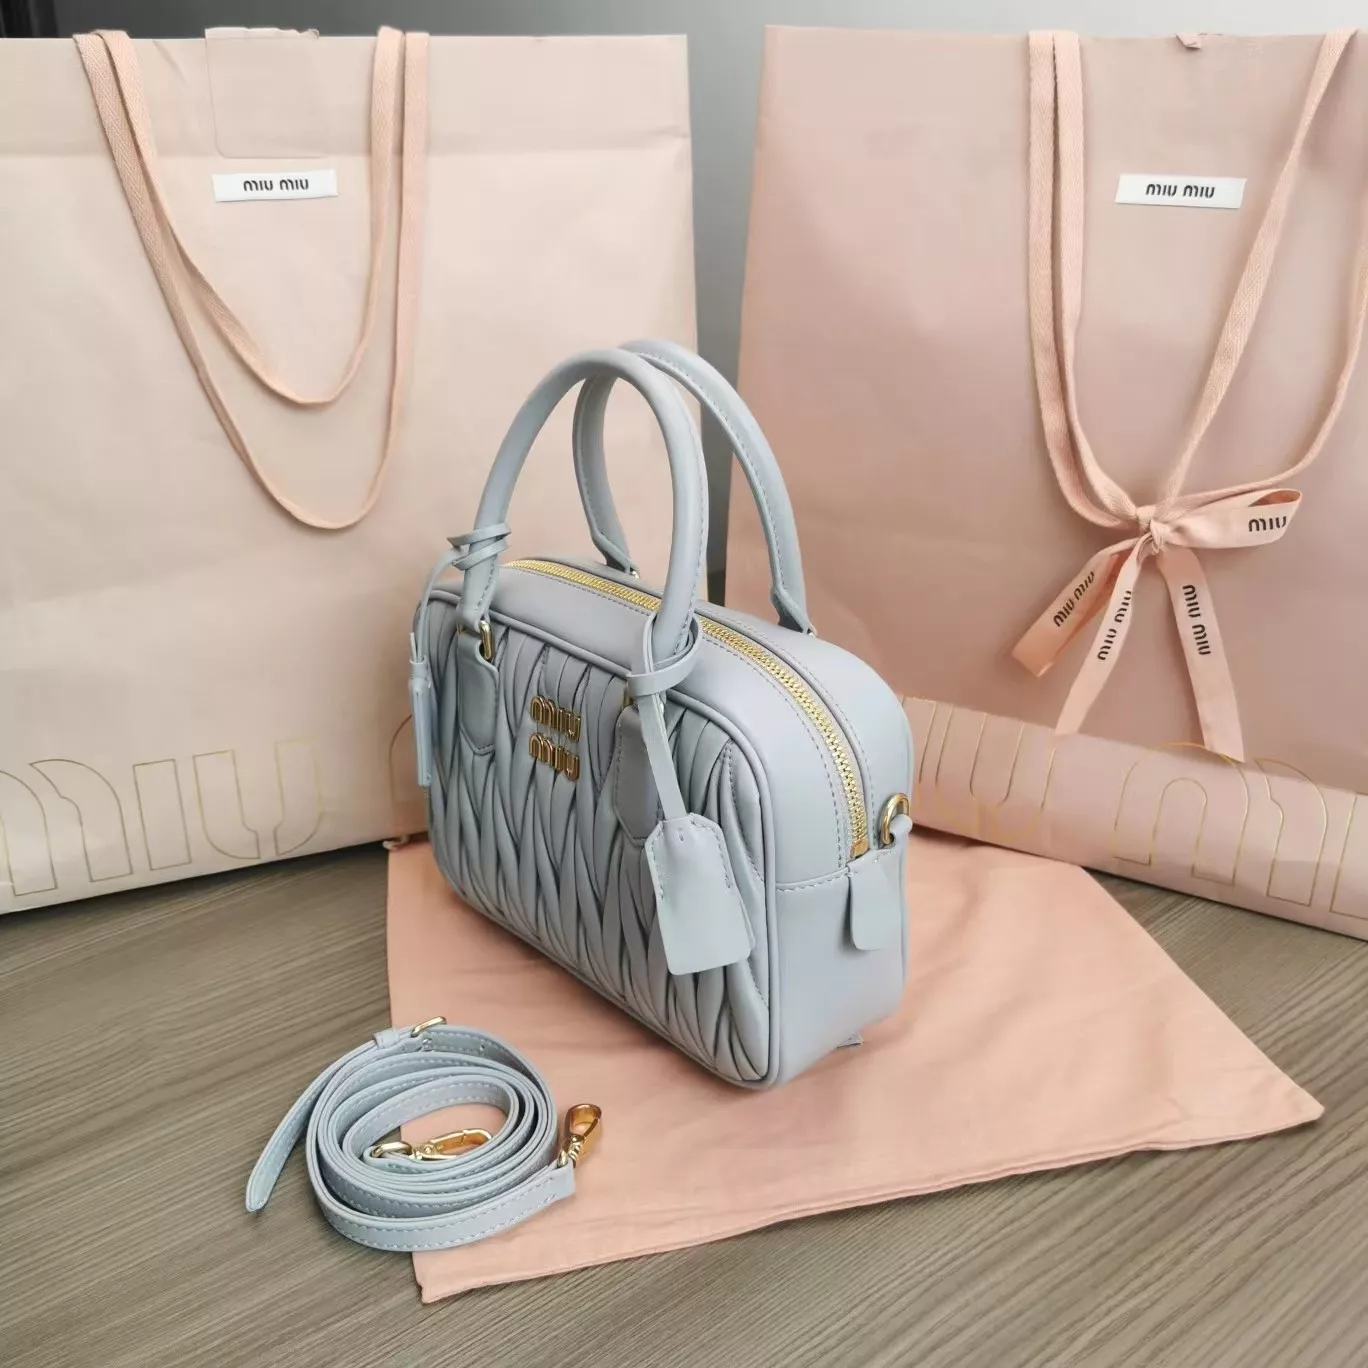 miumiuのバッグは本当にきれいで、この色はとてもきれいです。の画像 (4枚目)